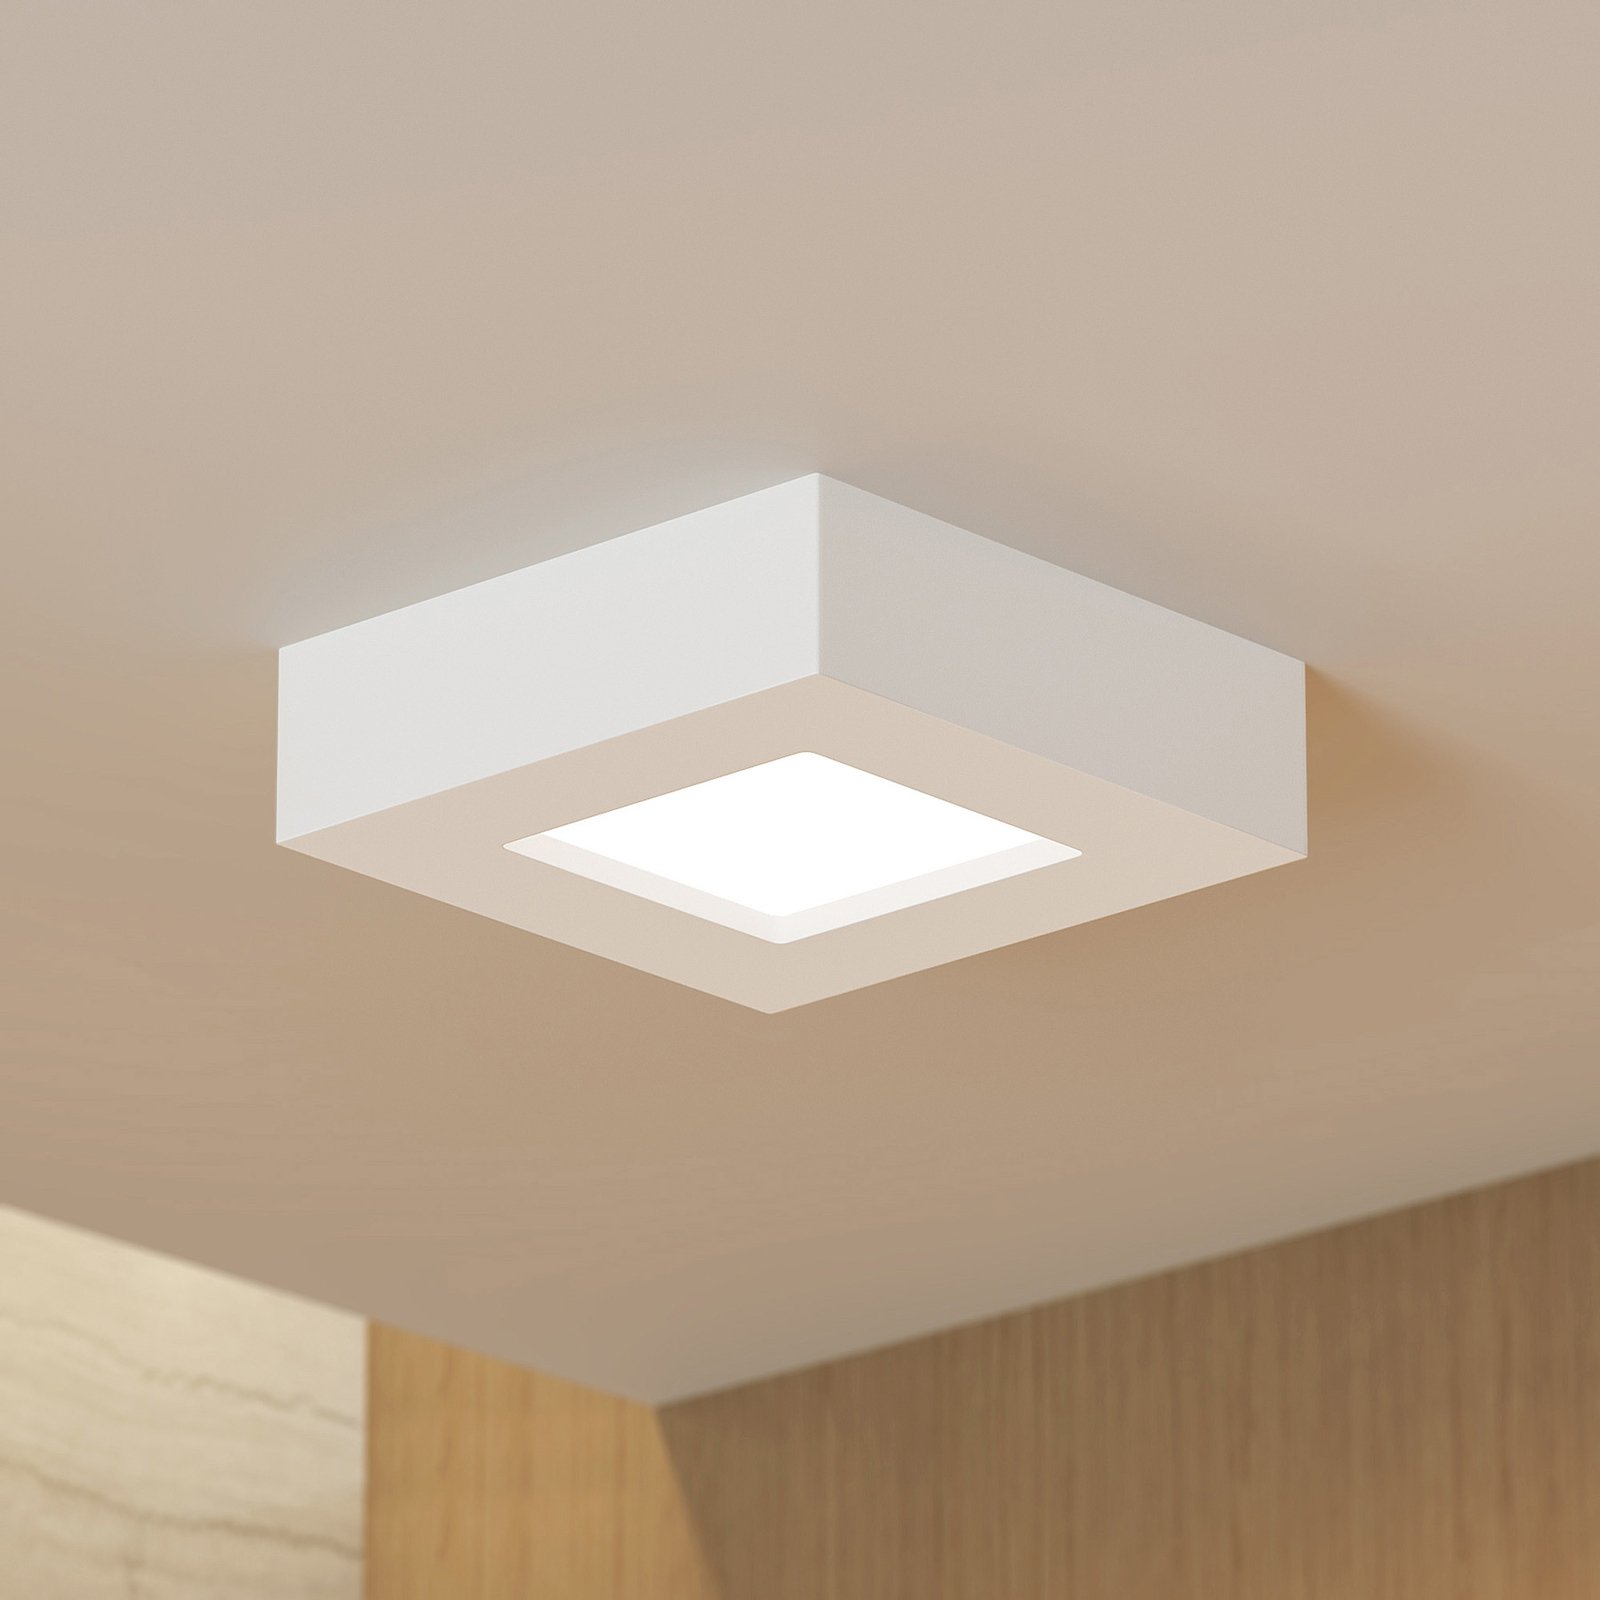 Prios Alette LED stropní svítidlo, bílé, 12,2 cm